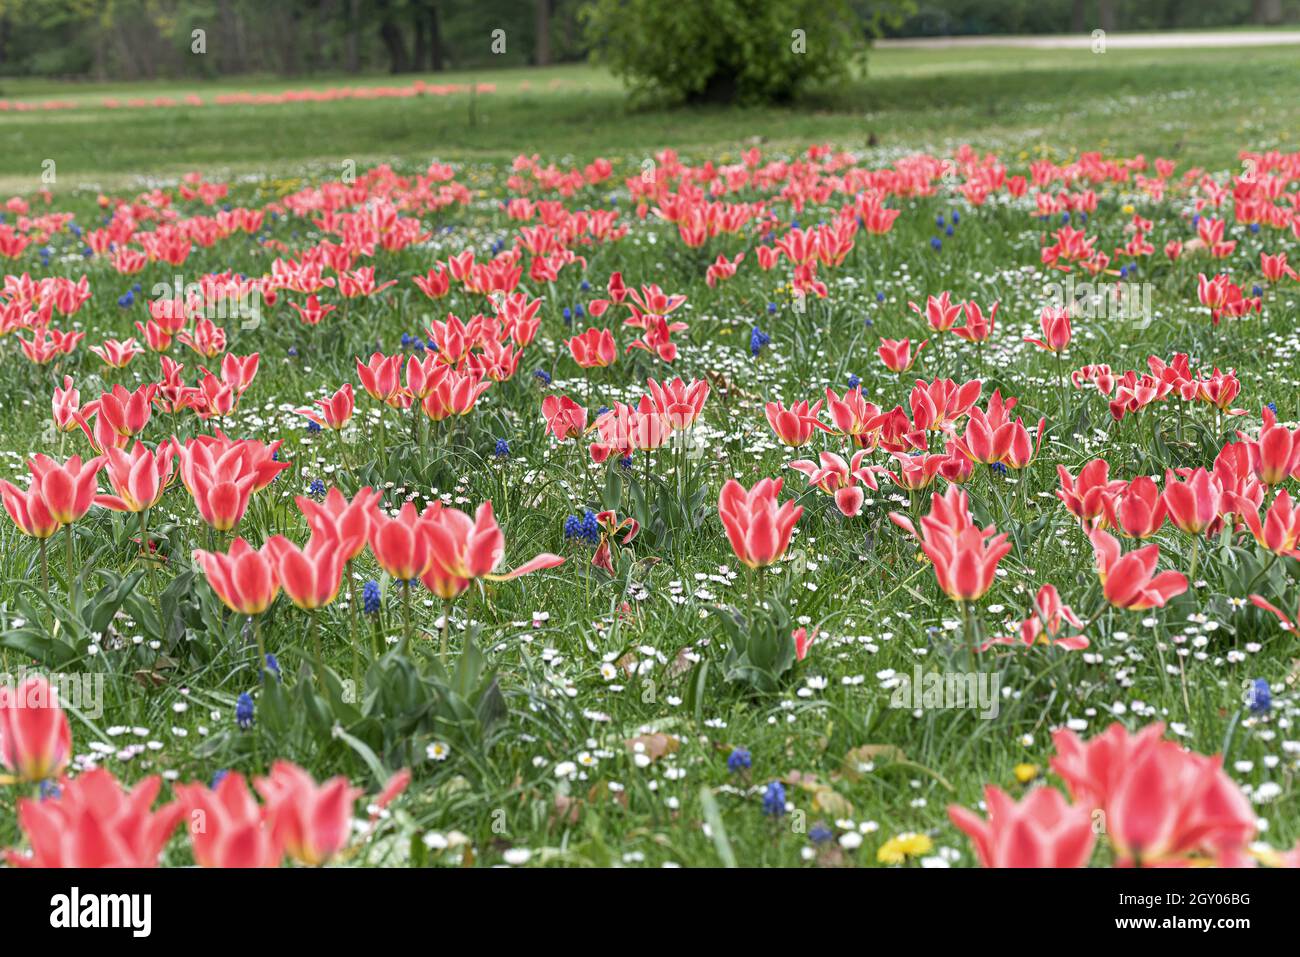 Greig's tulip (Tulipa greigii 'Pinocchio', Tulipa greigii Pinocchio), blooming, cultivar Pinocchio Stock Photo